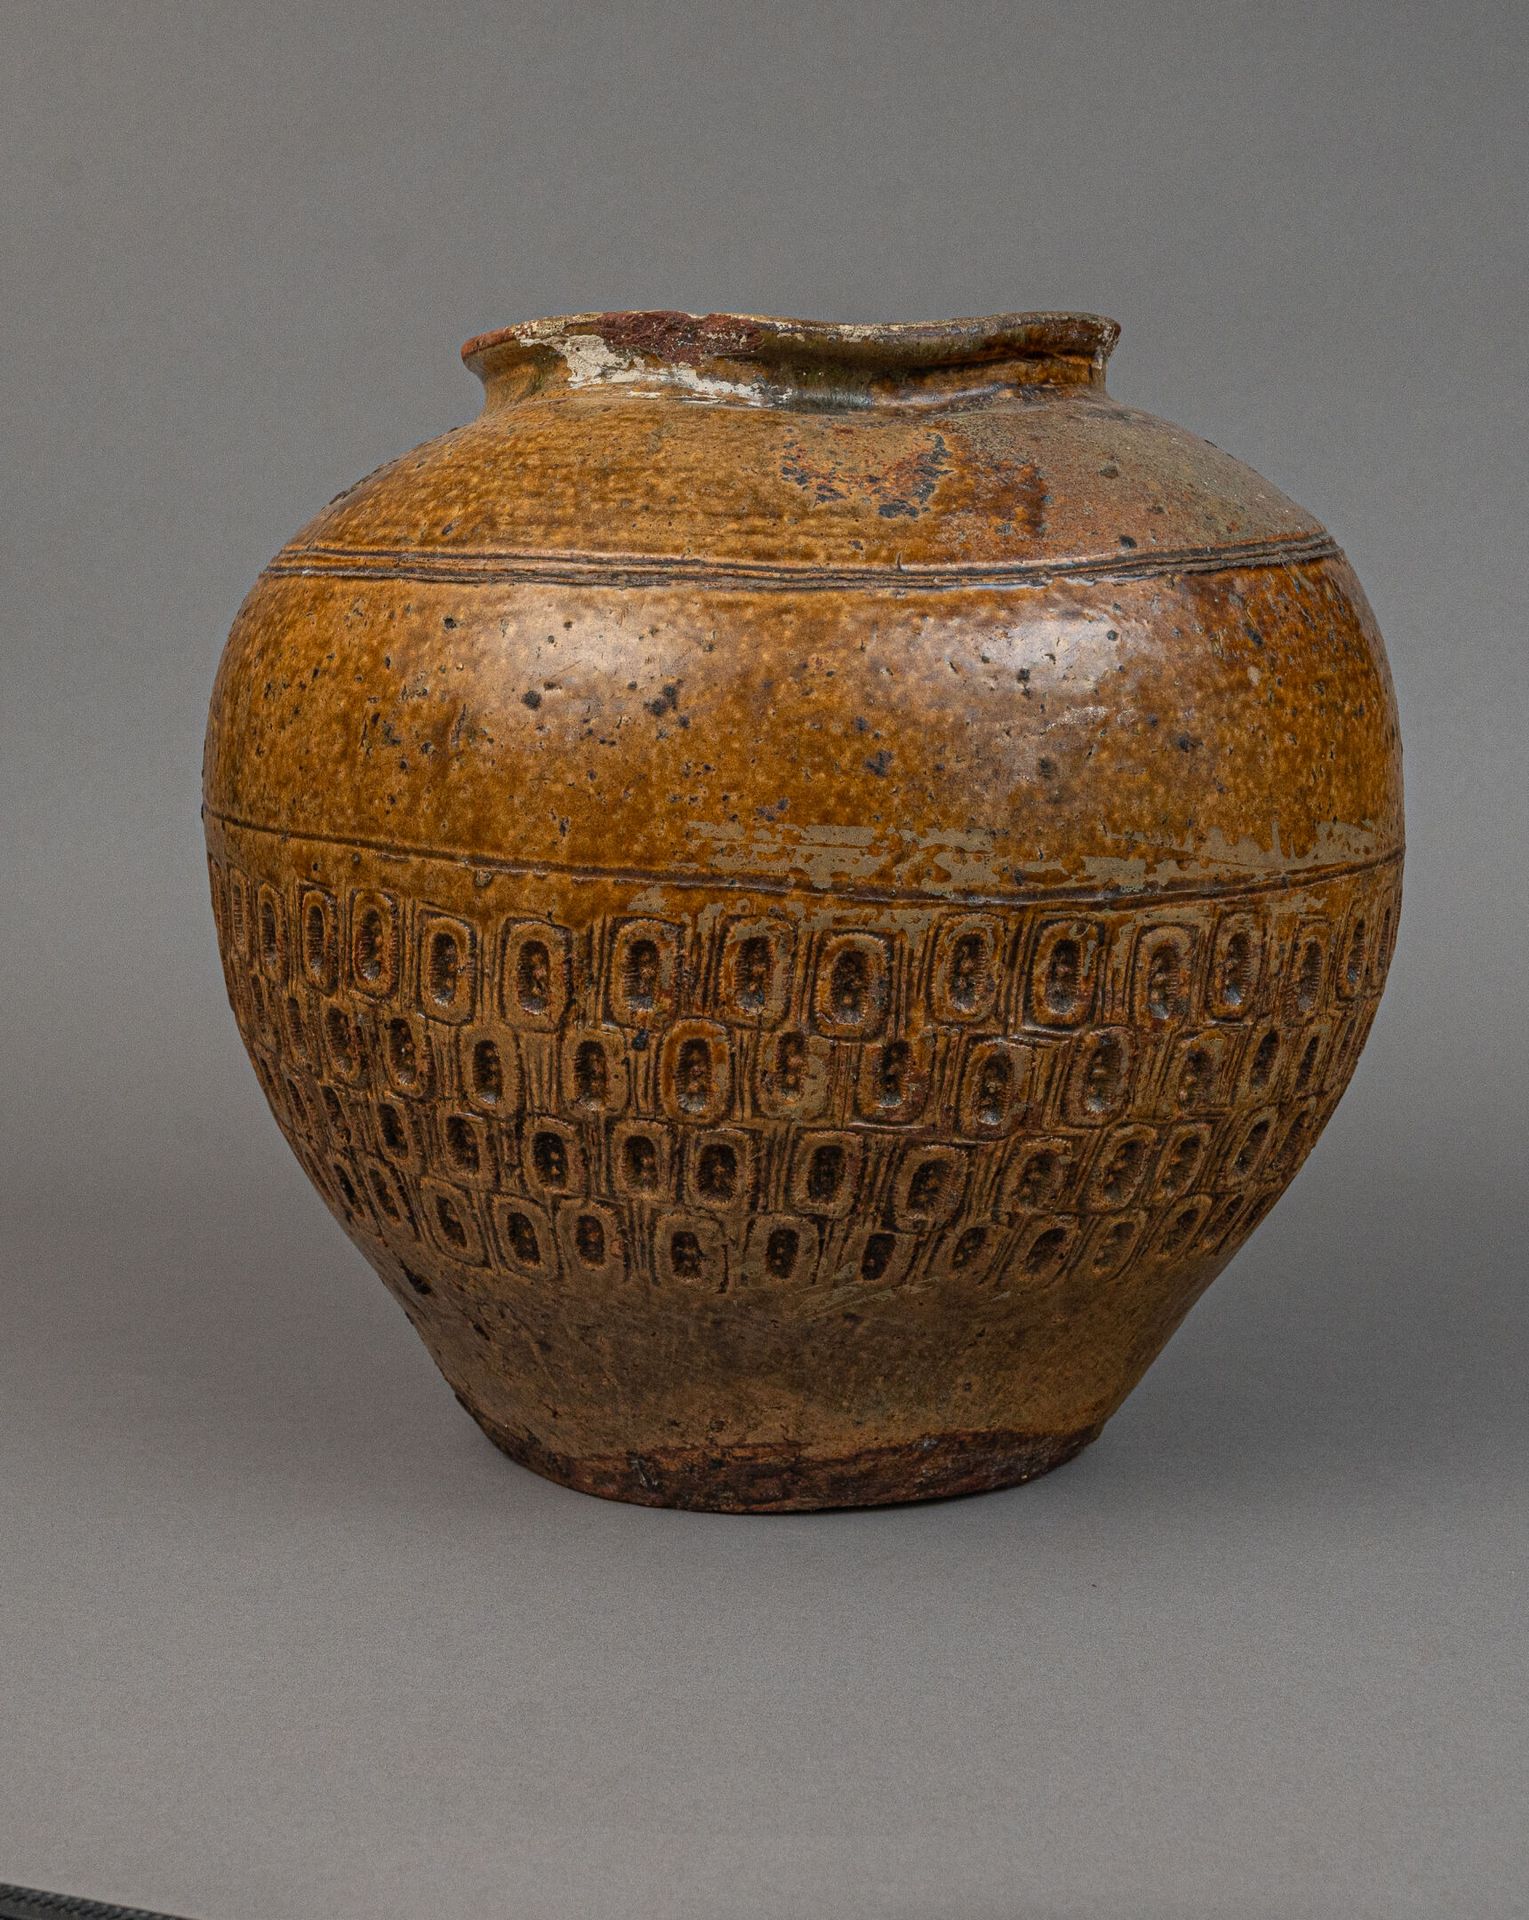 Null 琥珀棕色釉陶罐，可能产于越南，18 世纪
罐身底部有浮雕装饰，椭圆形图案中重复出现三个圆点。颈部有缺口，已修复，釉面缺失。
H.高 31 厘米 - 宽&hellip;